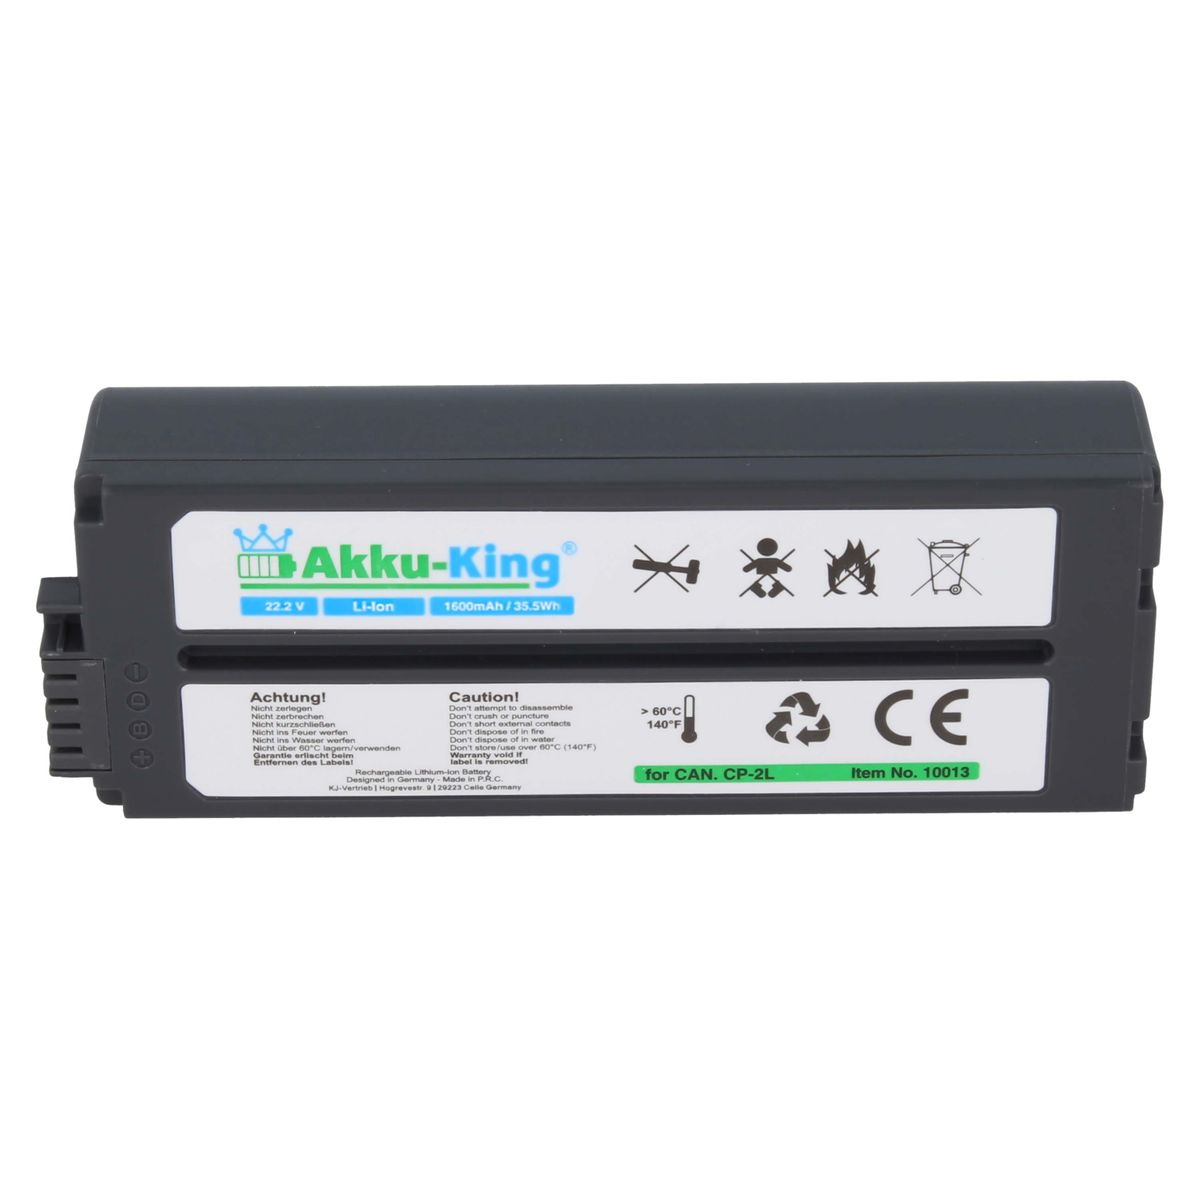 AKKU-KING Akku kompatibel mit Canon 1600mAh Li-Ion Geräte-Akku, 22.2 Volt, NB-CP1L